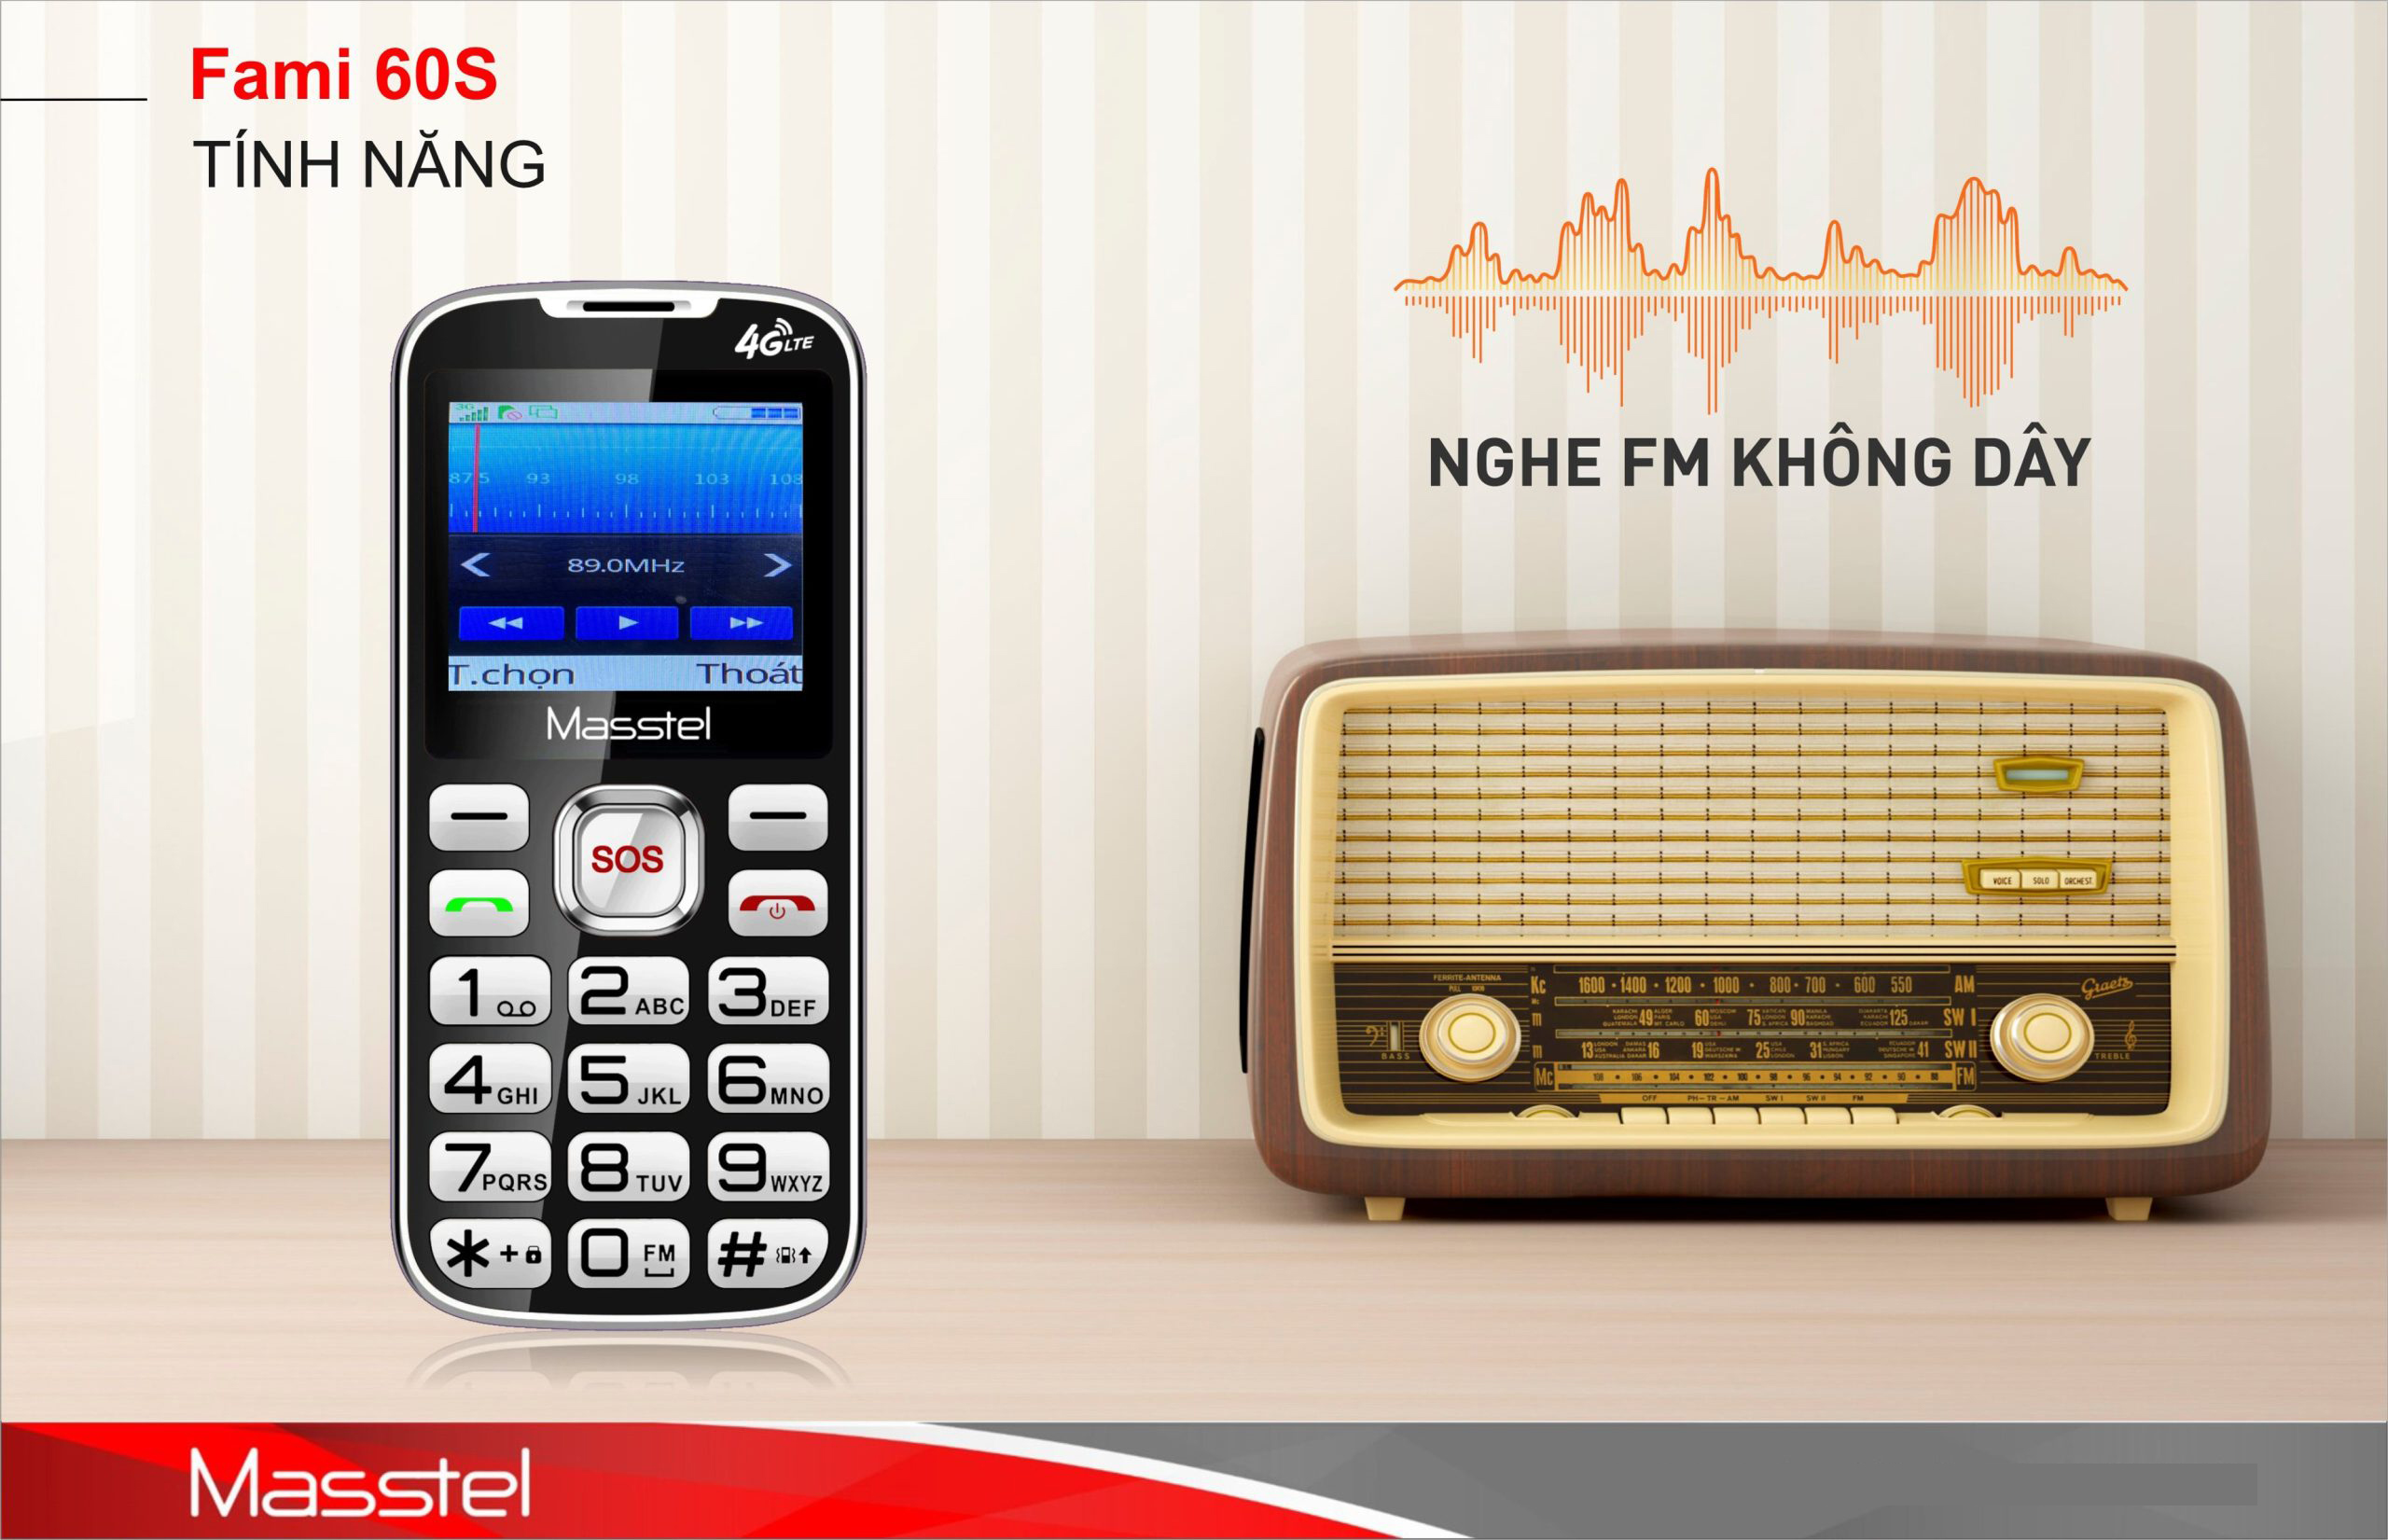 Điện thoại Masstel Fami 60S 4G(LTE) ,Bàn phím lớn, Khung viền kim loại - Hàng chính hãng